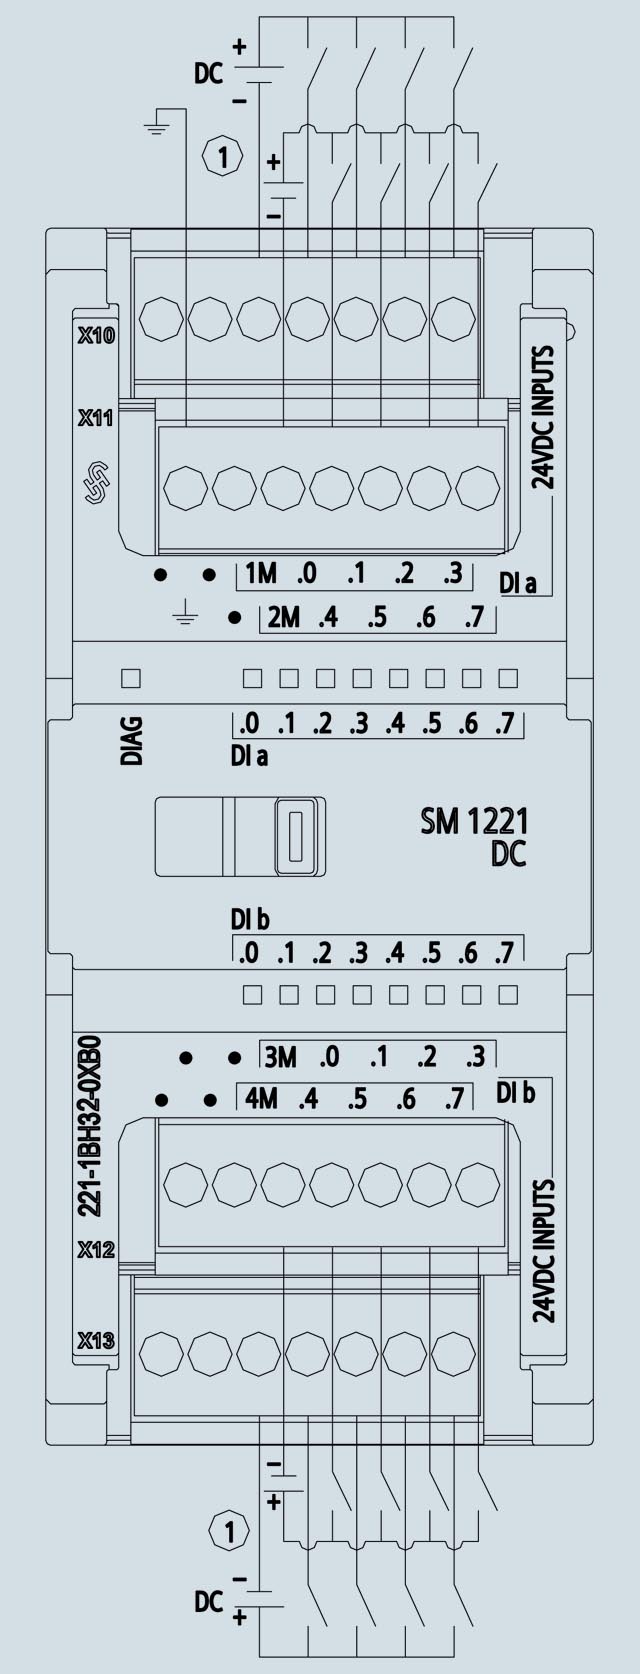 Bảng vẽ thiết kế Module S7-1200 SM 1221 DC 200kHz - 6ES7221-1BH32-0XB0 từ nhà sản xuất Siemens